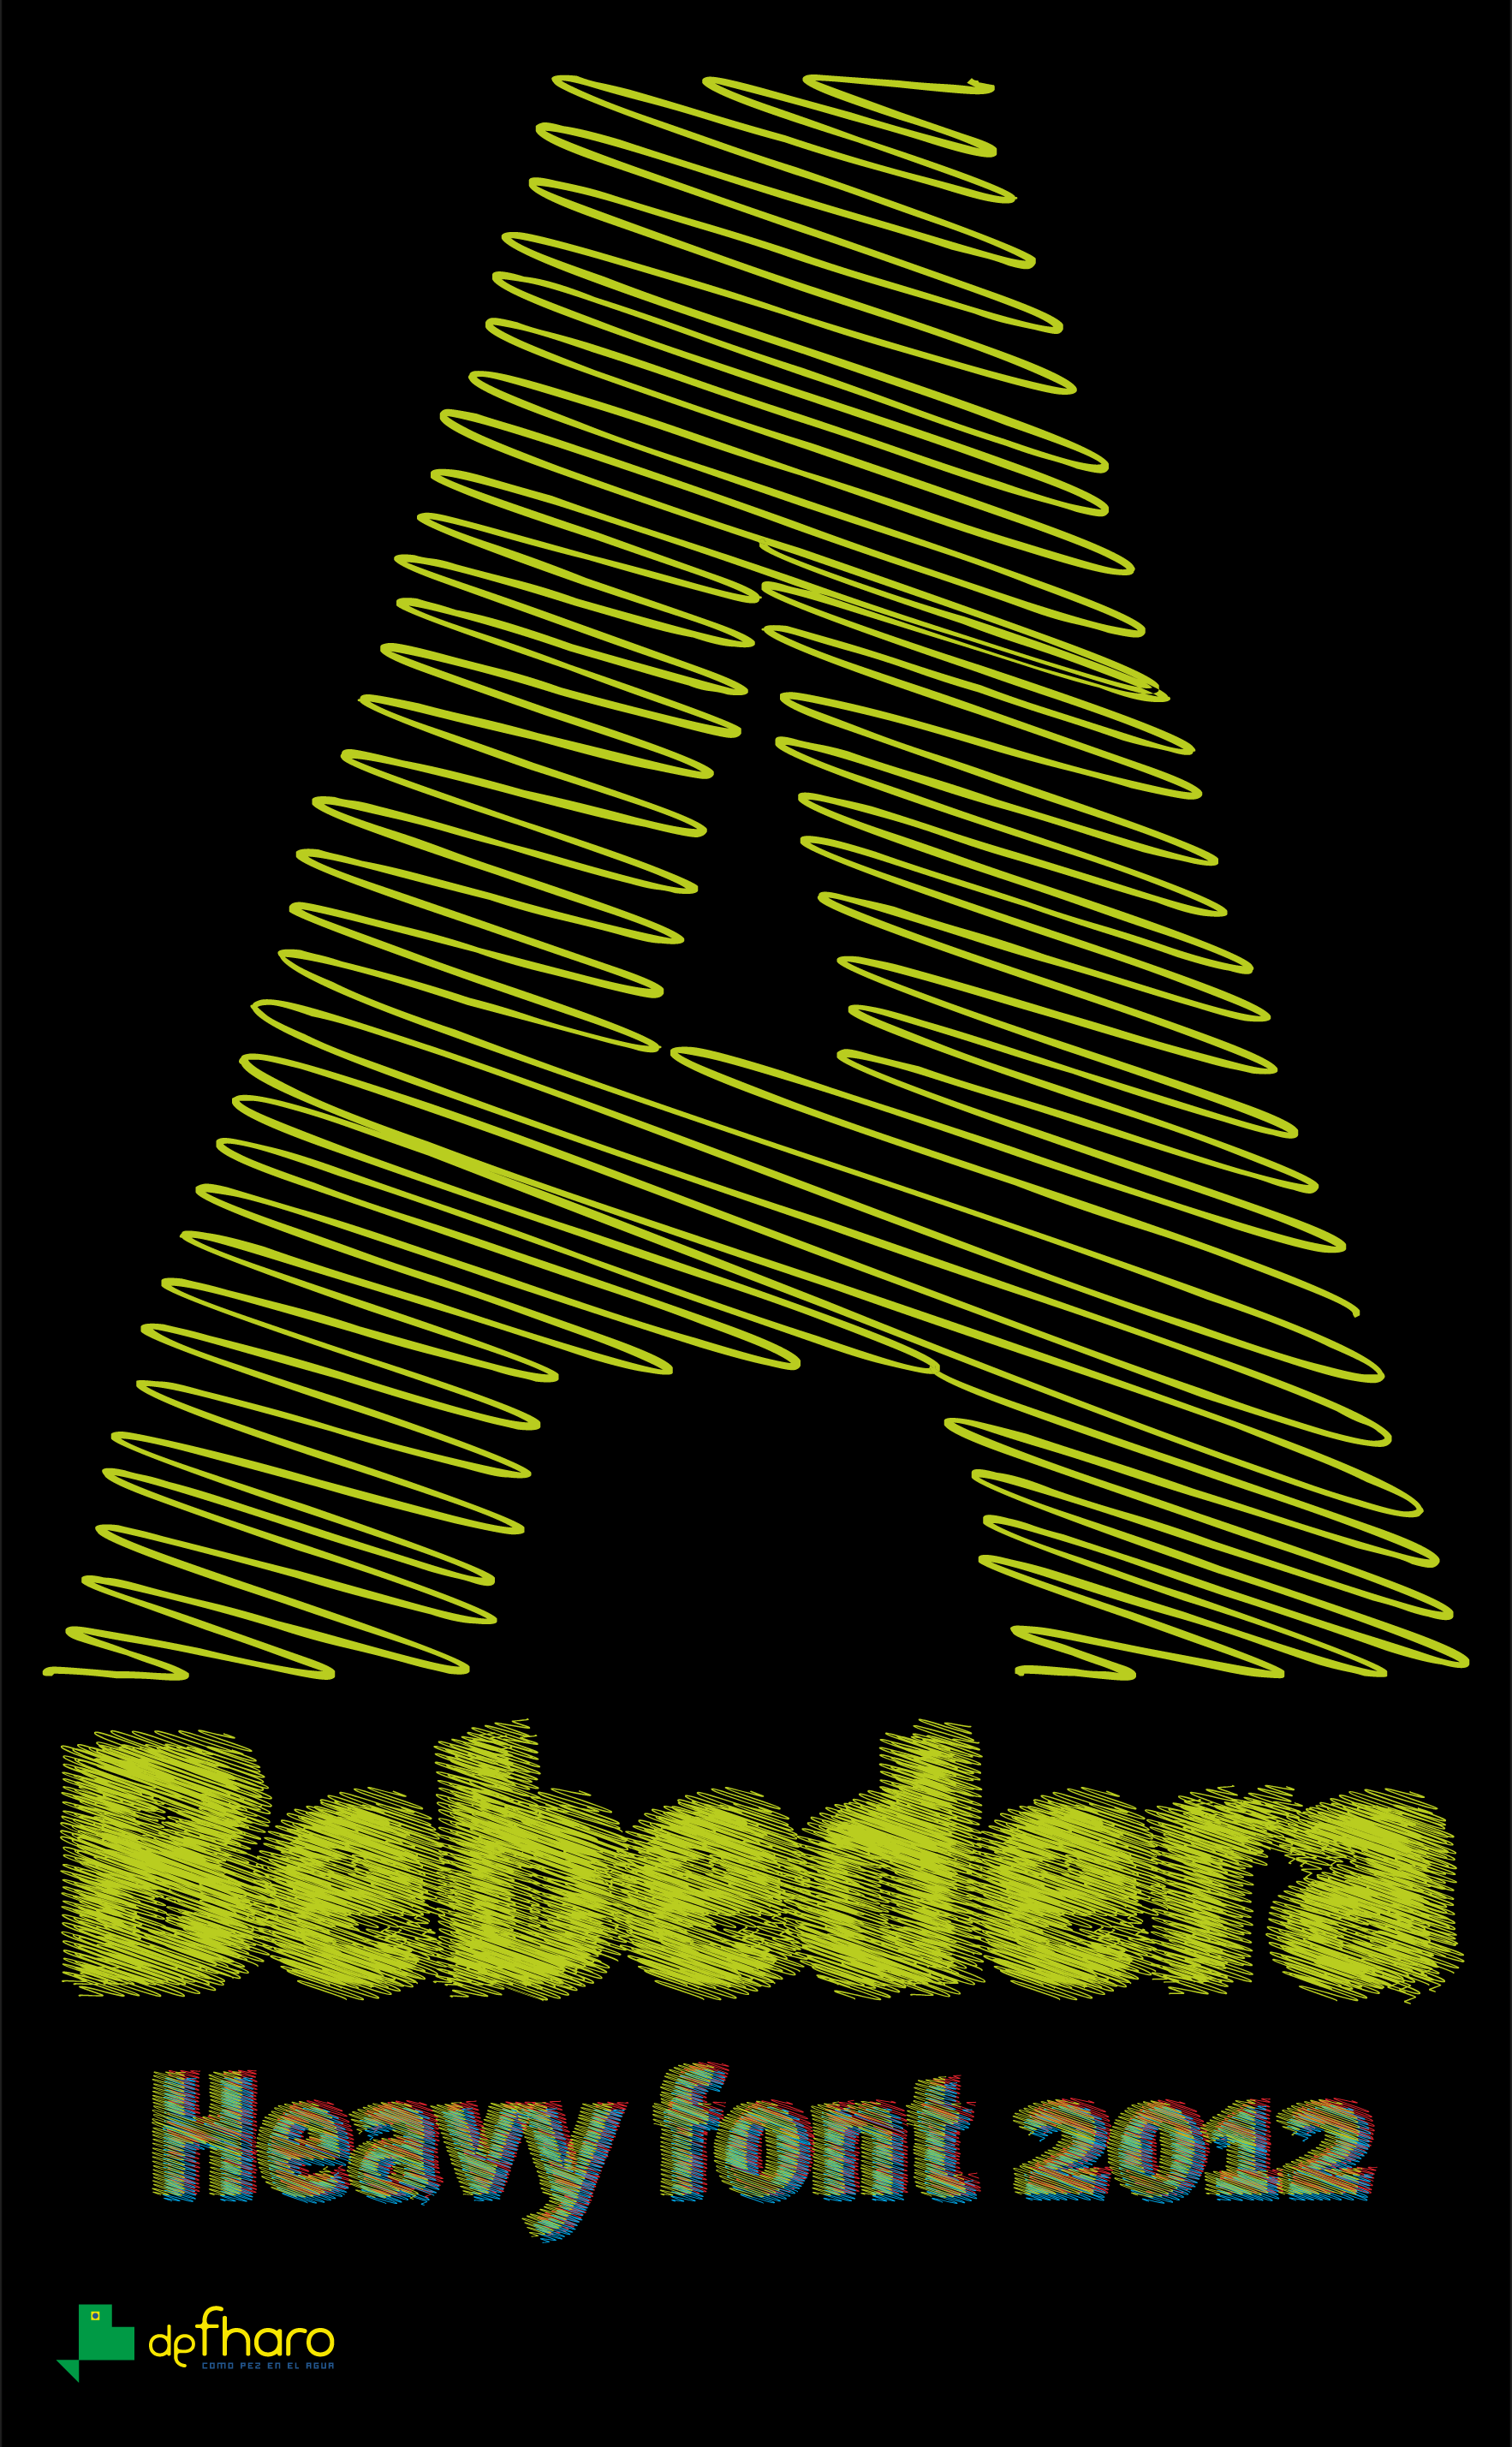 A Bebedera font